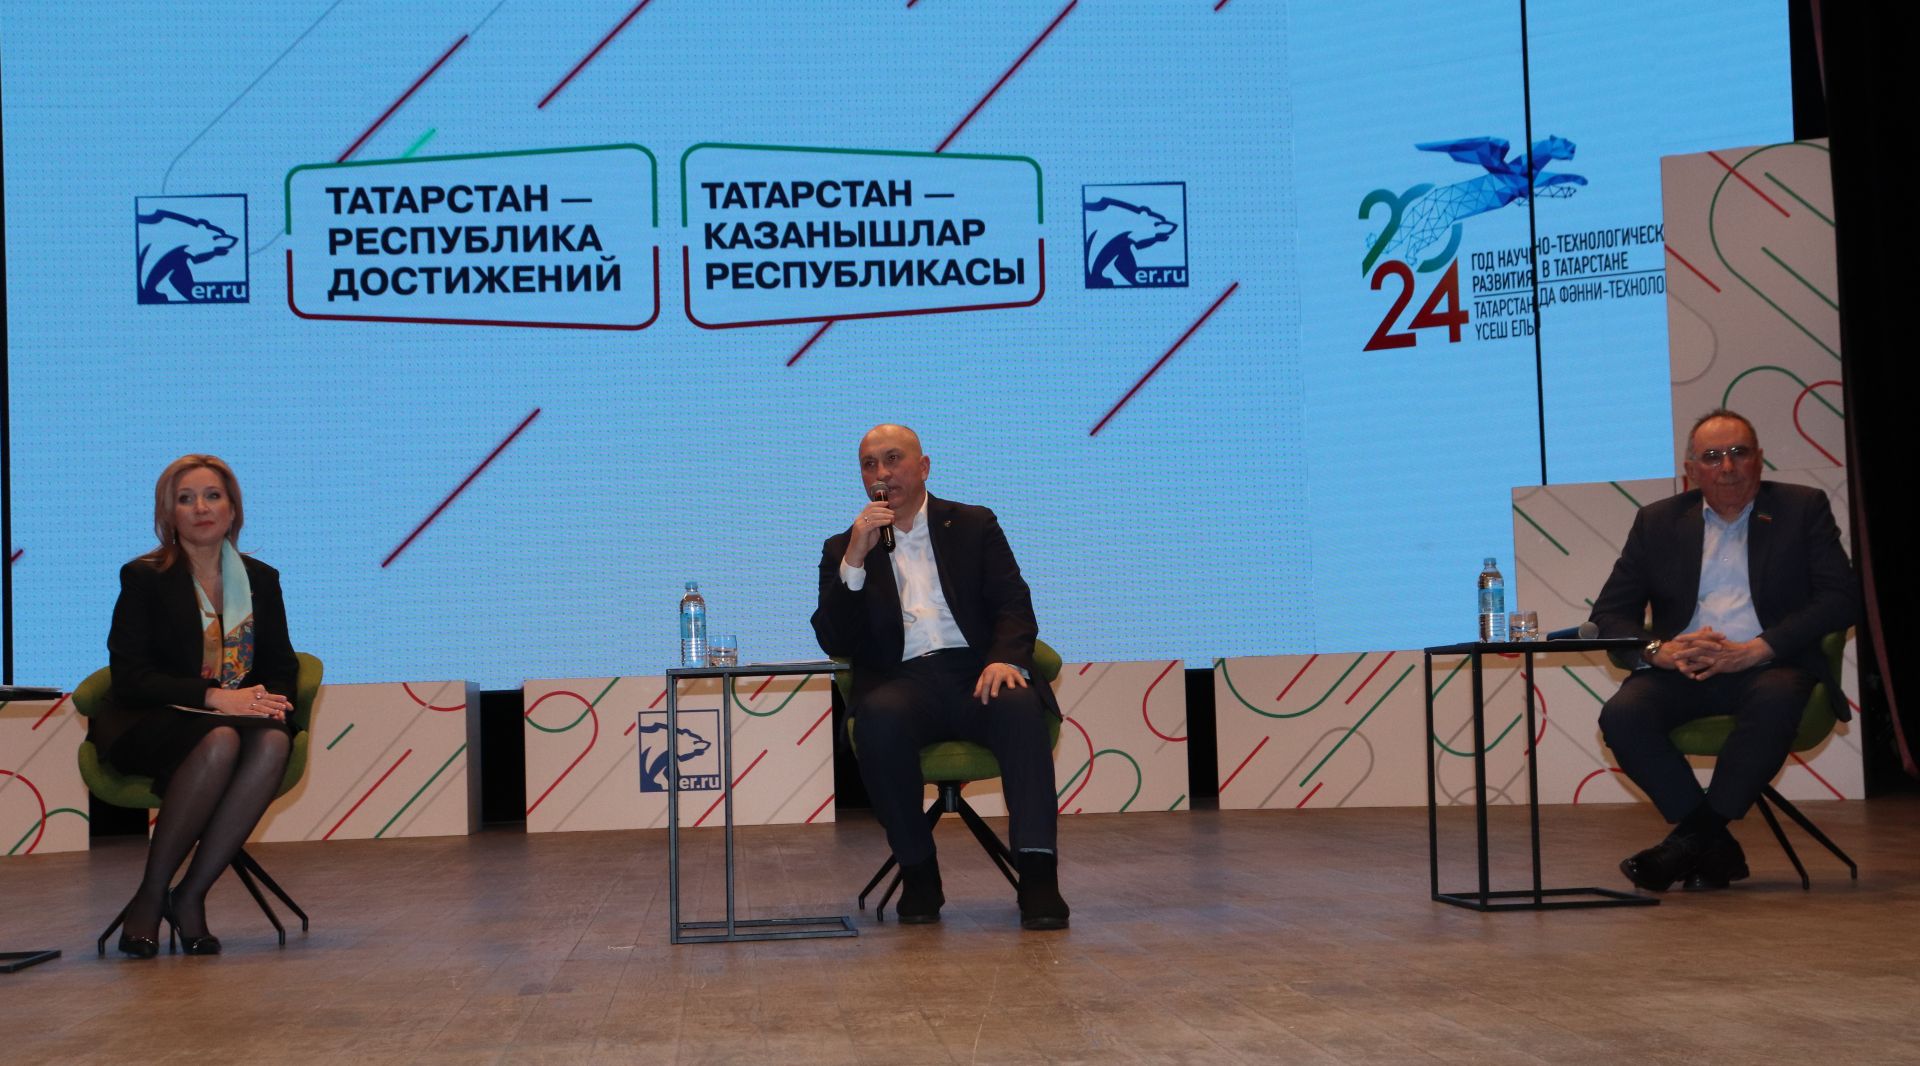 Национальные проекты воплощают мечты: Азнакаево приняло эстафету автобусного марафона «Татарстан — республика достижений»